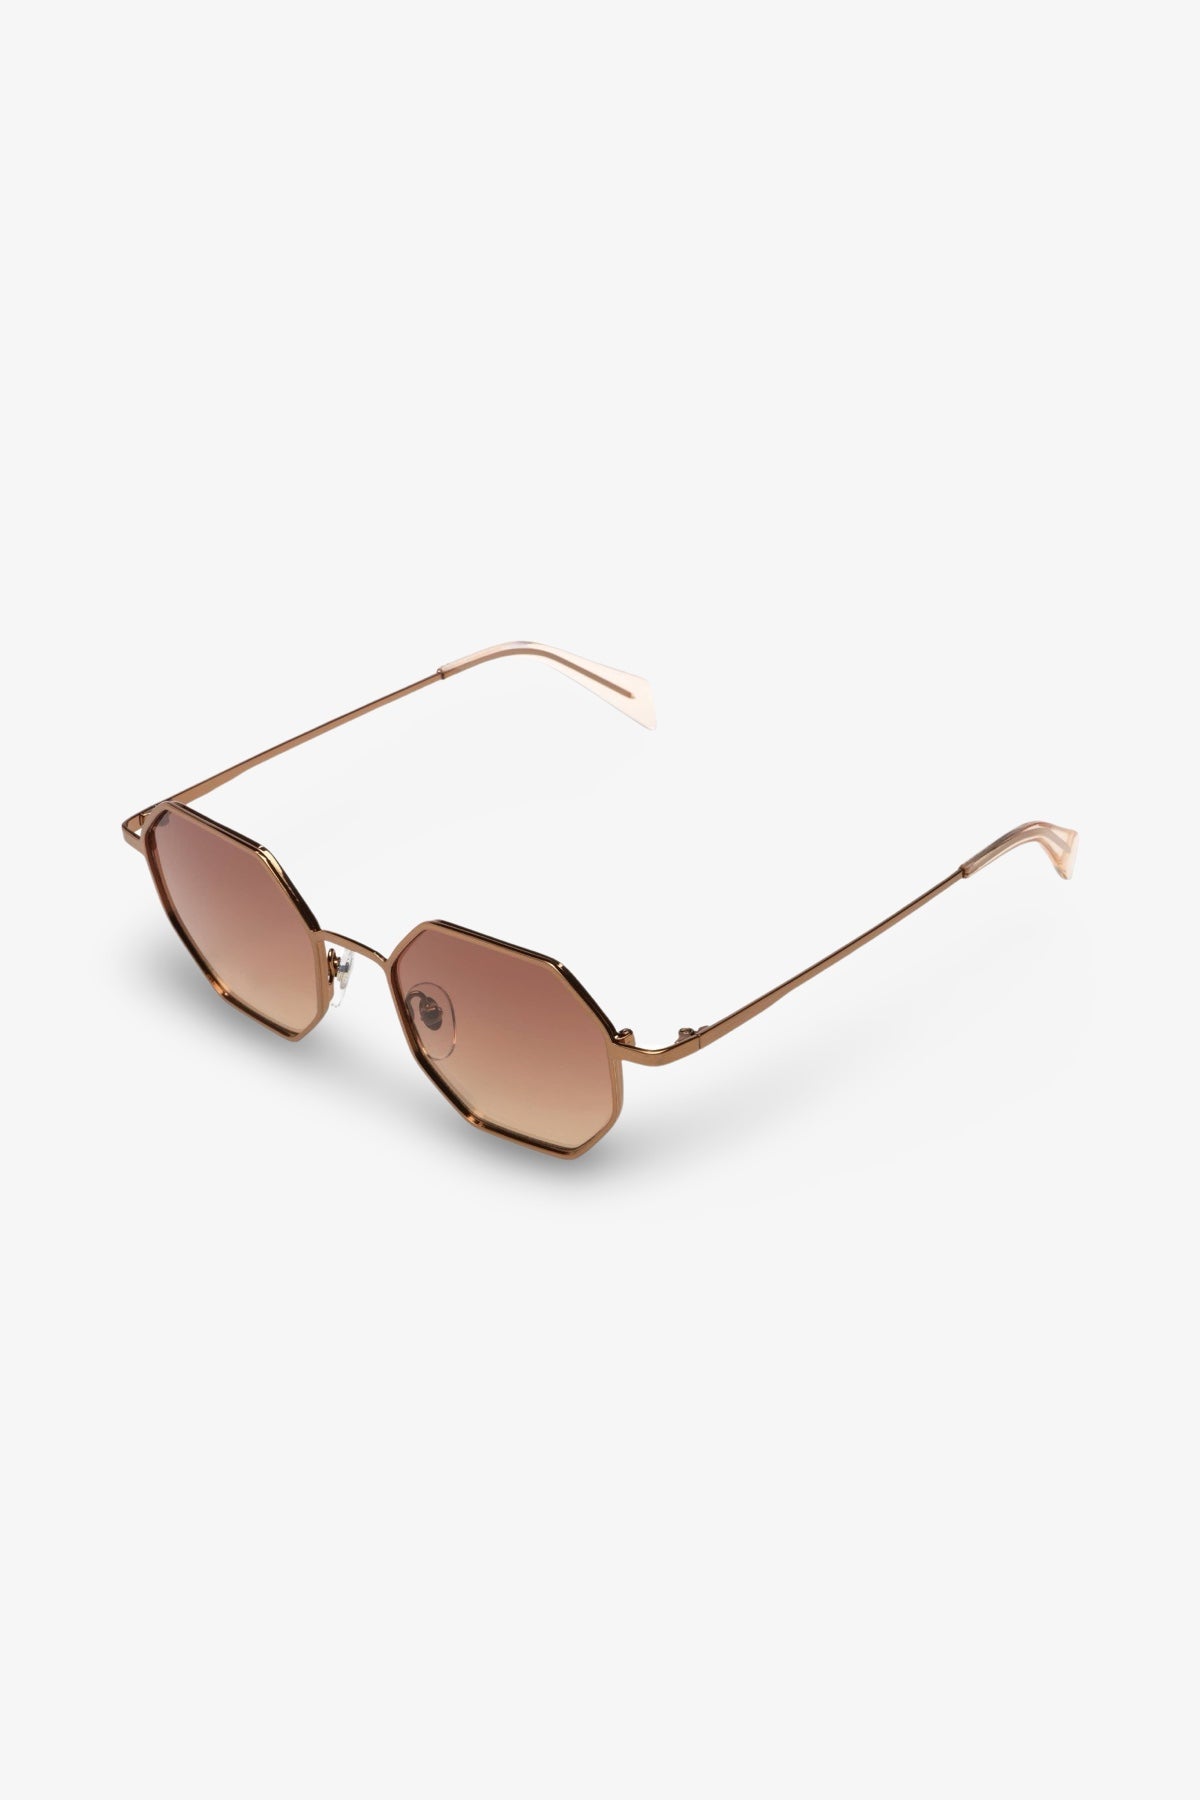 Jean Sunglasses | Pale Copper